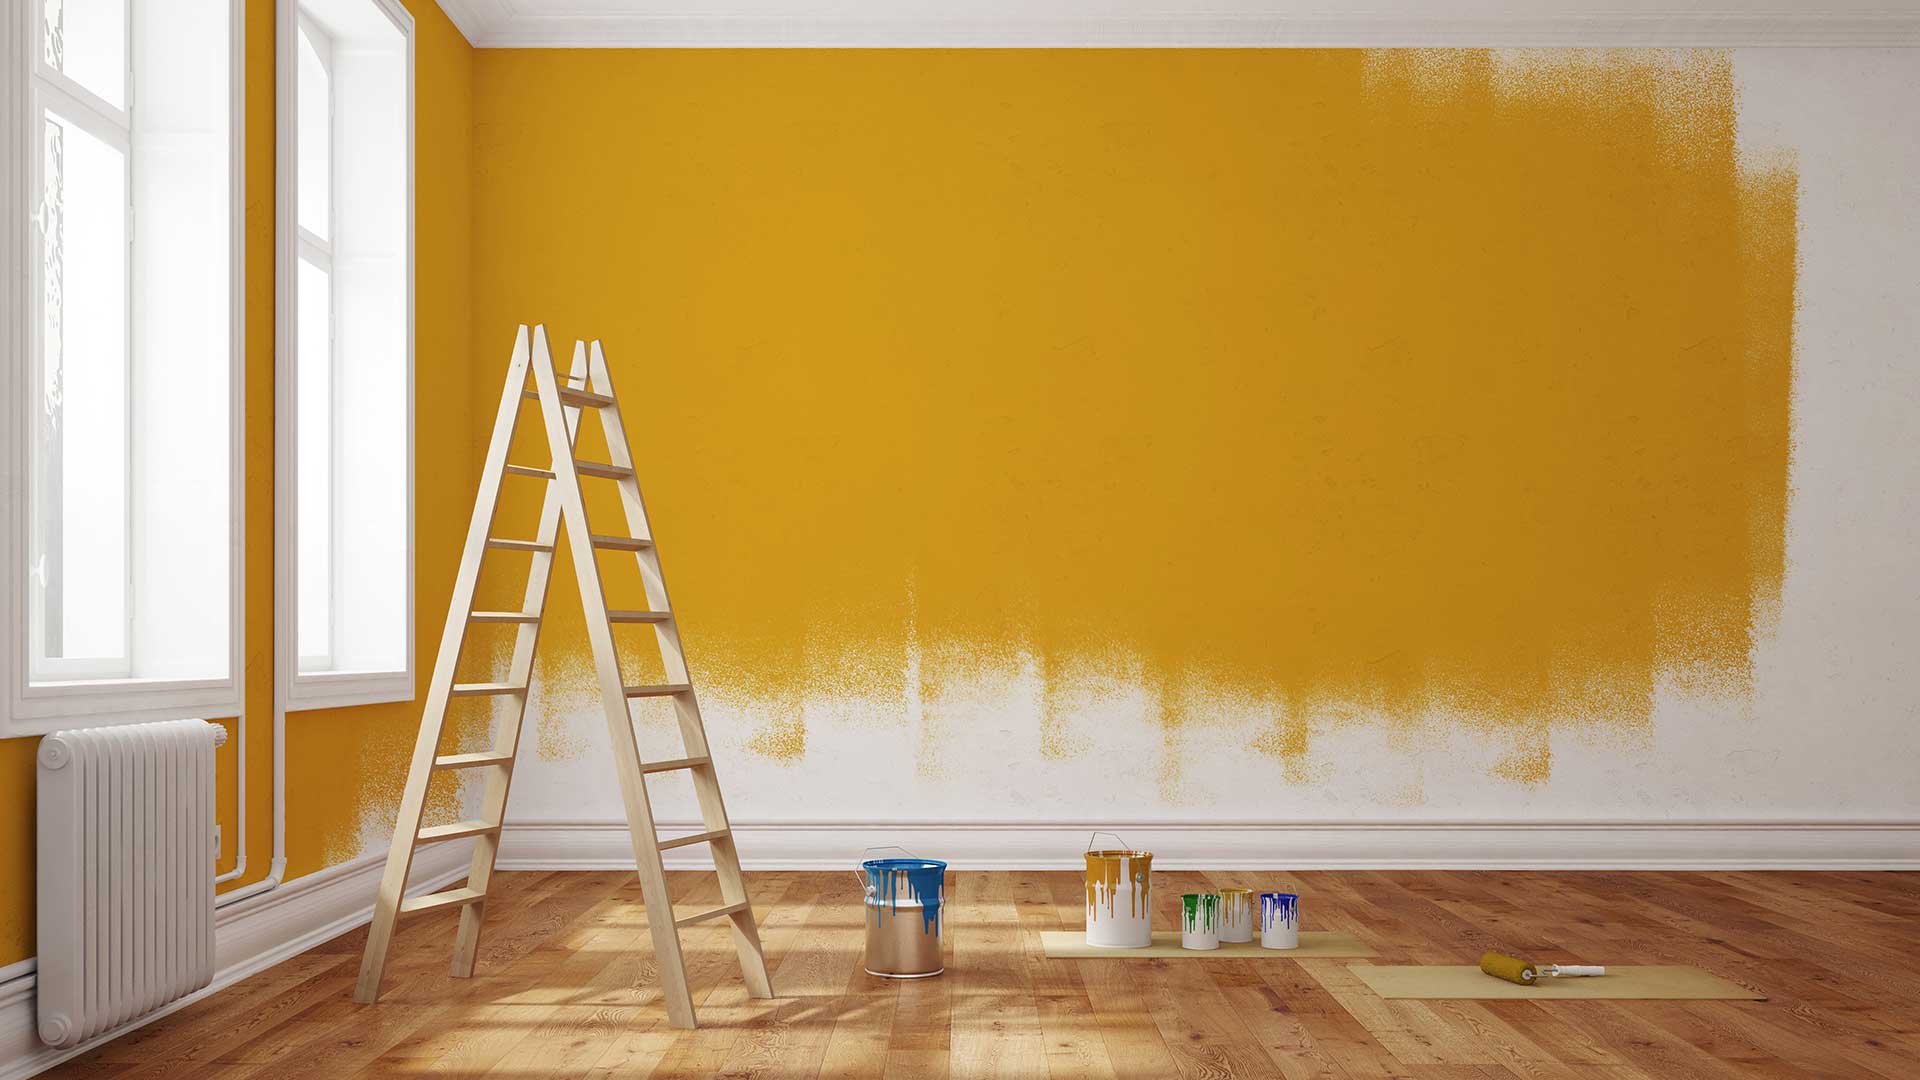 pomieszczenie w trakcie malowania ścian na żółty kolor